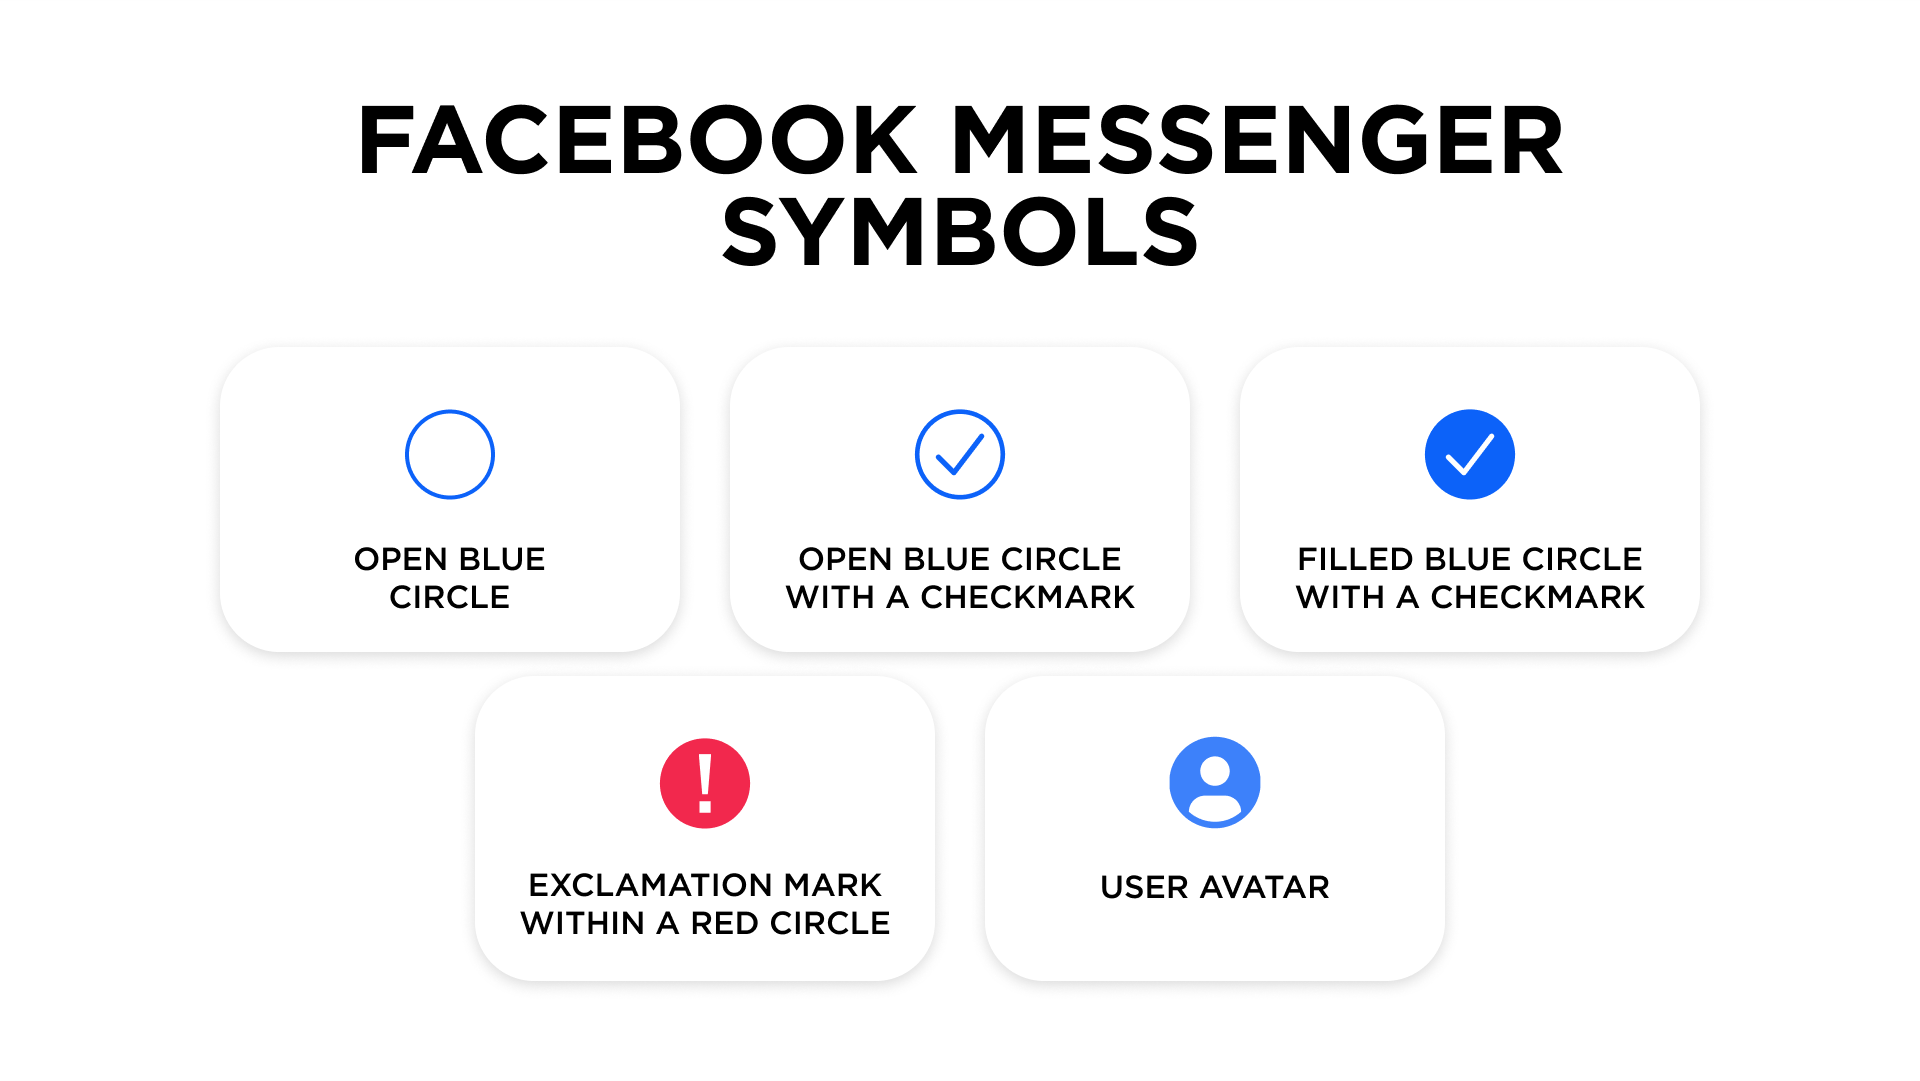 Facebook Messenger symbols